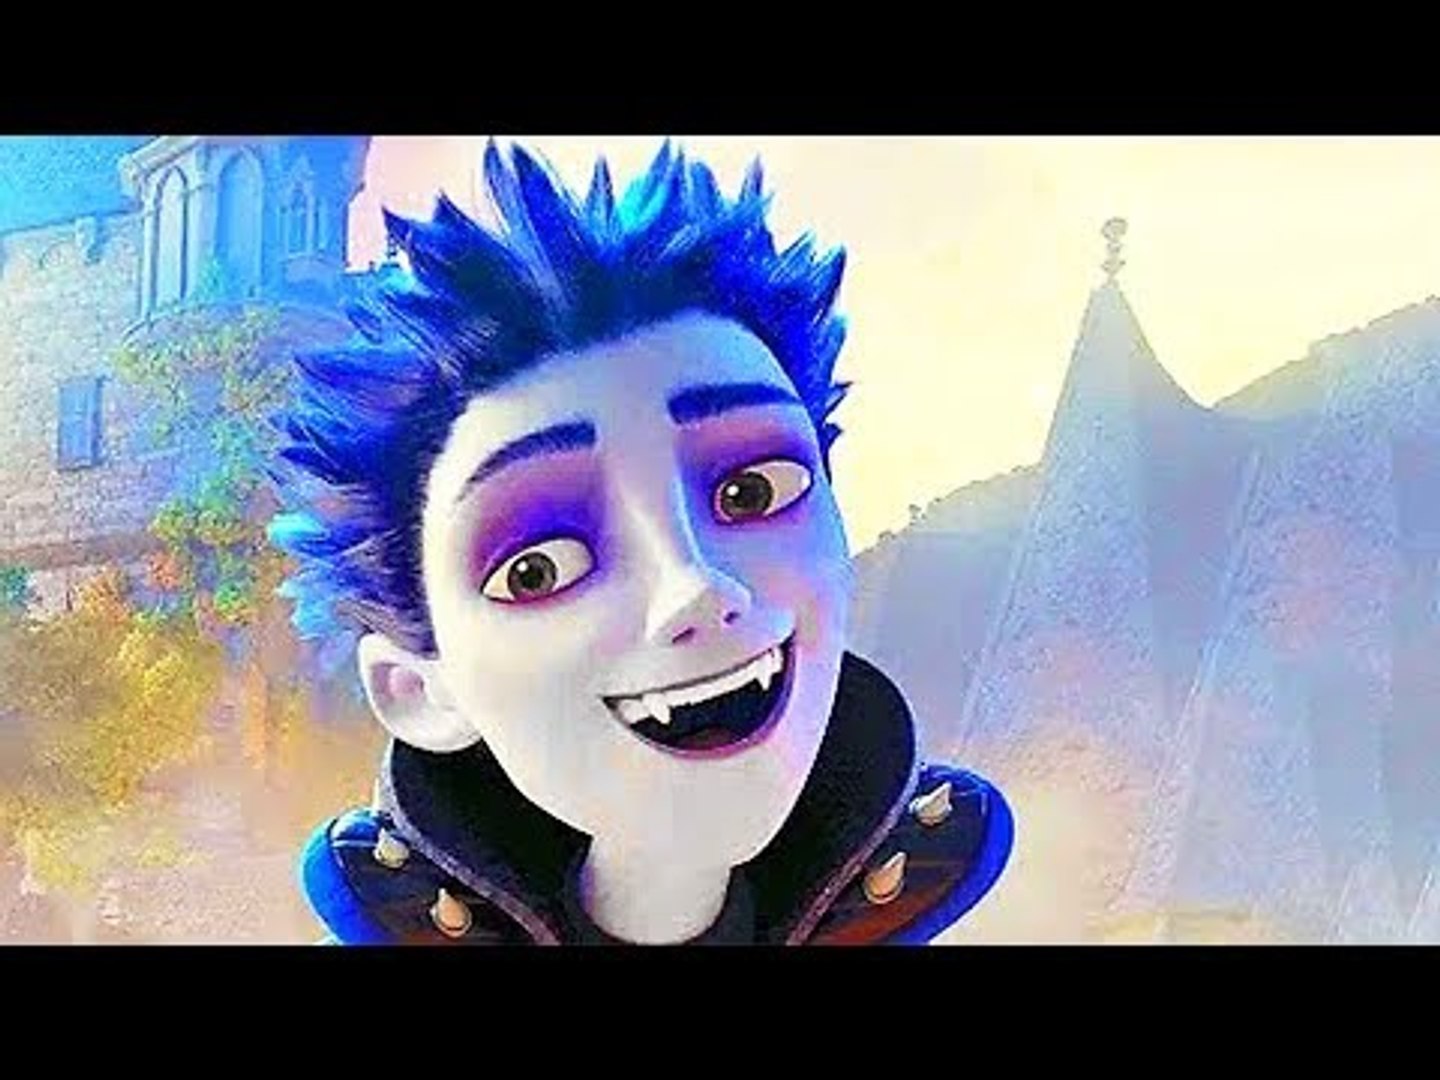 THE LITTLE VAMPIRE FULL Movie Trailer (2018) Animation, Kids